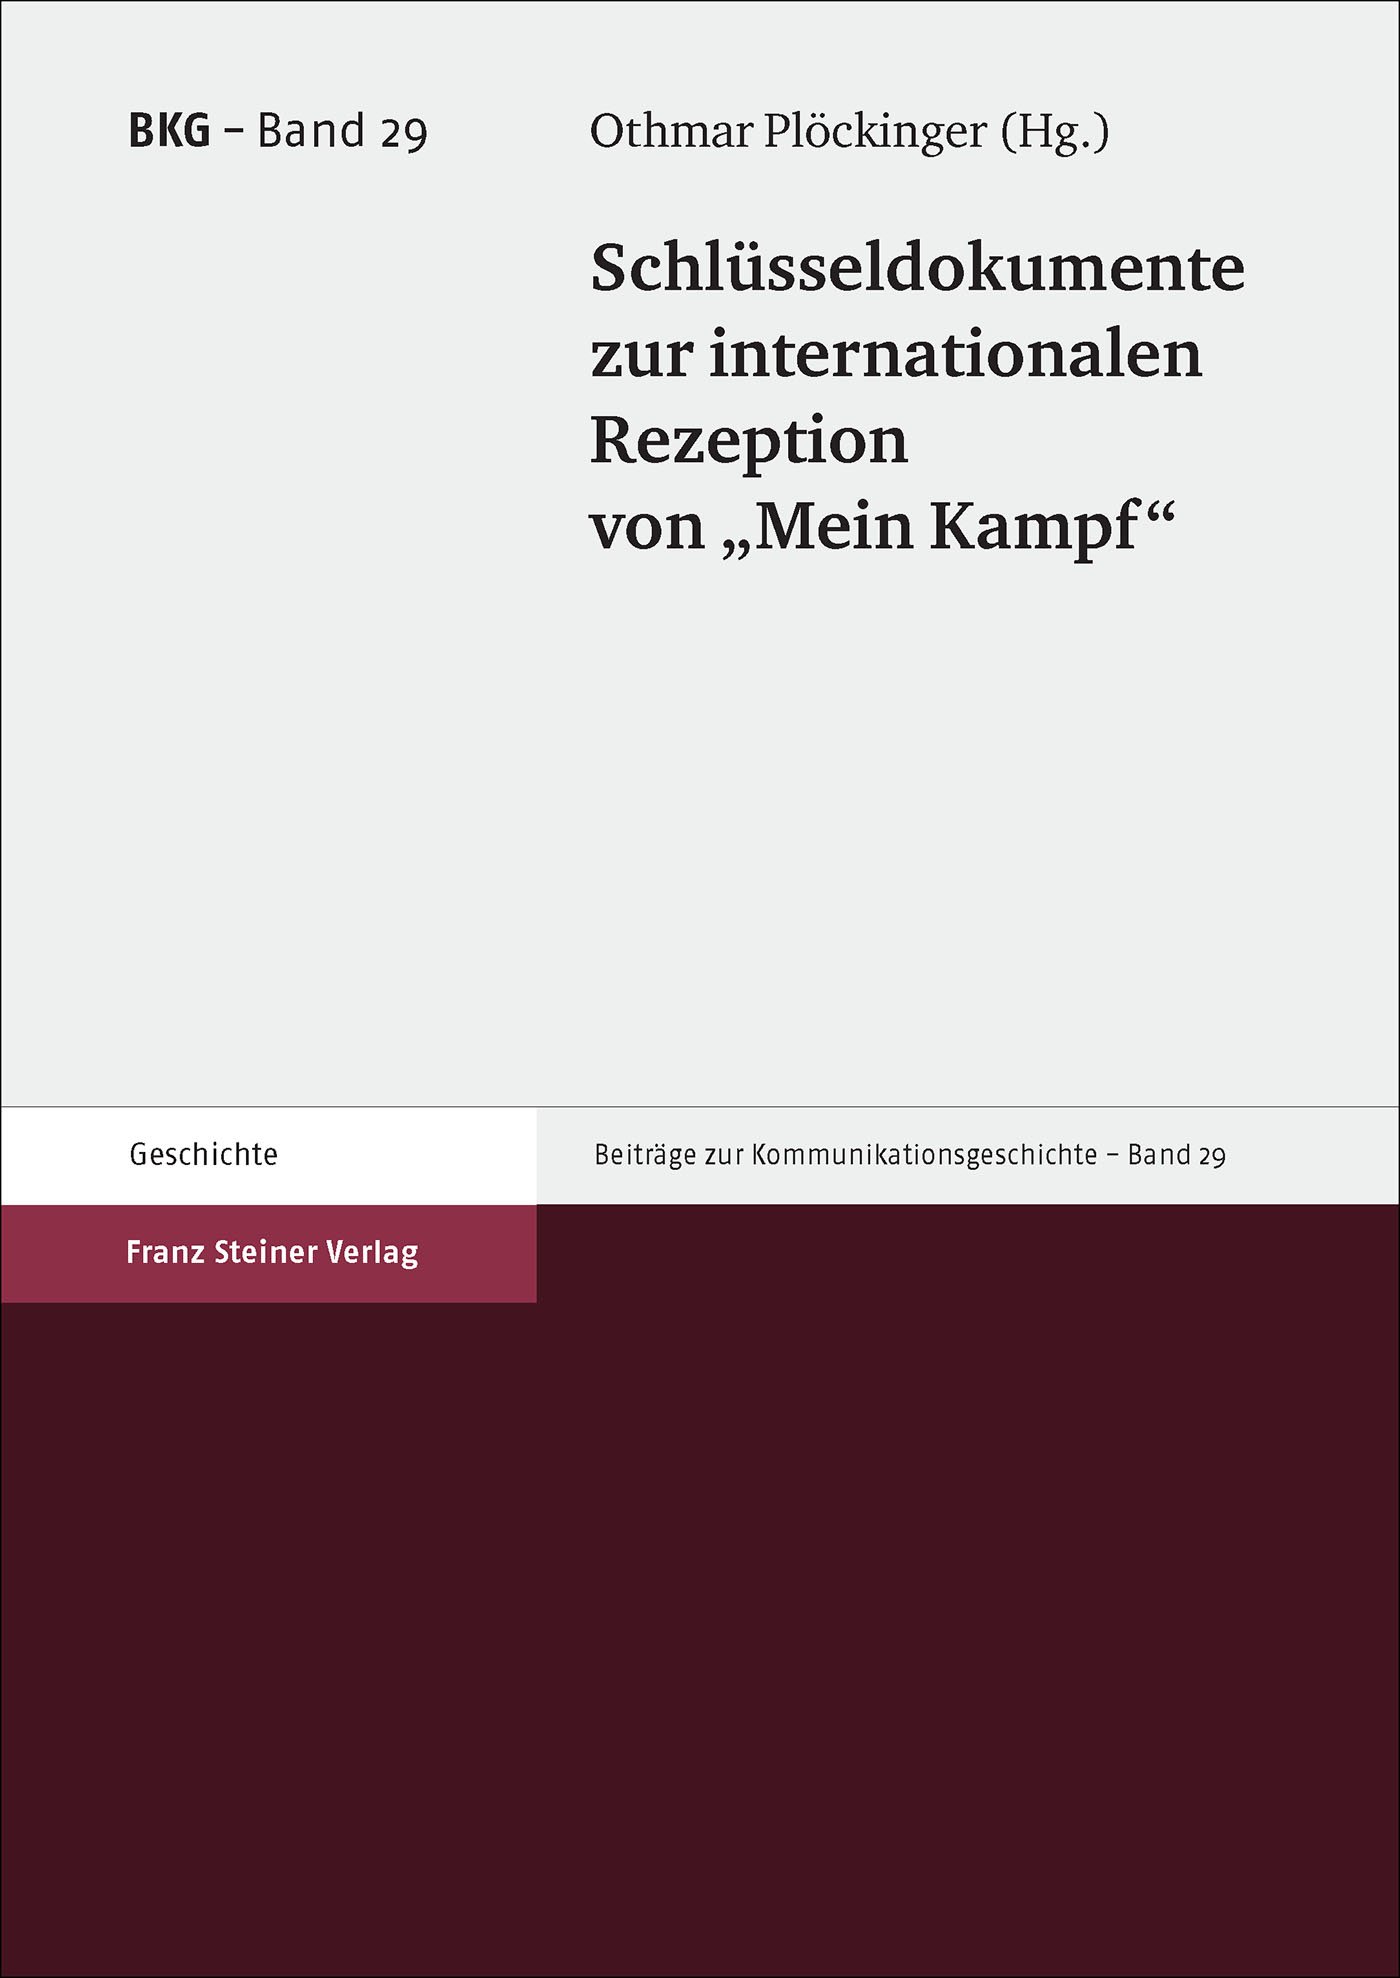 Schlüsseldokumente zur internationalen Rezeption von "Mein Kampf"